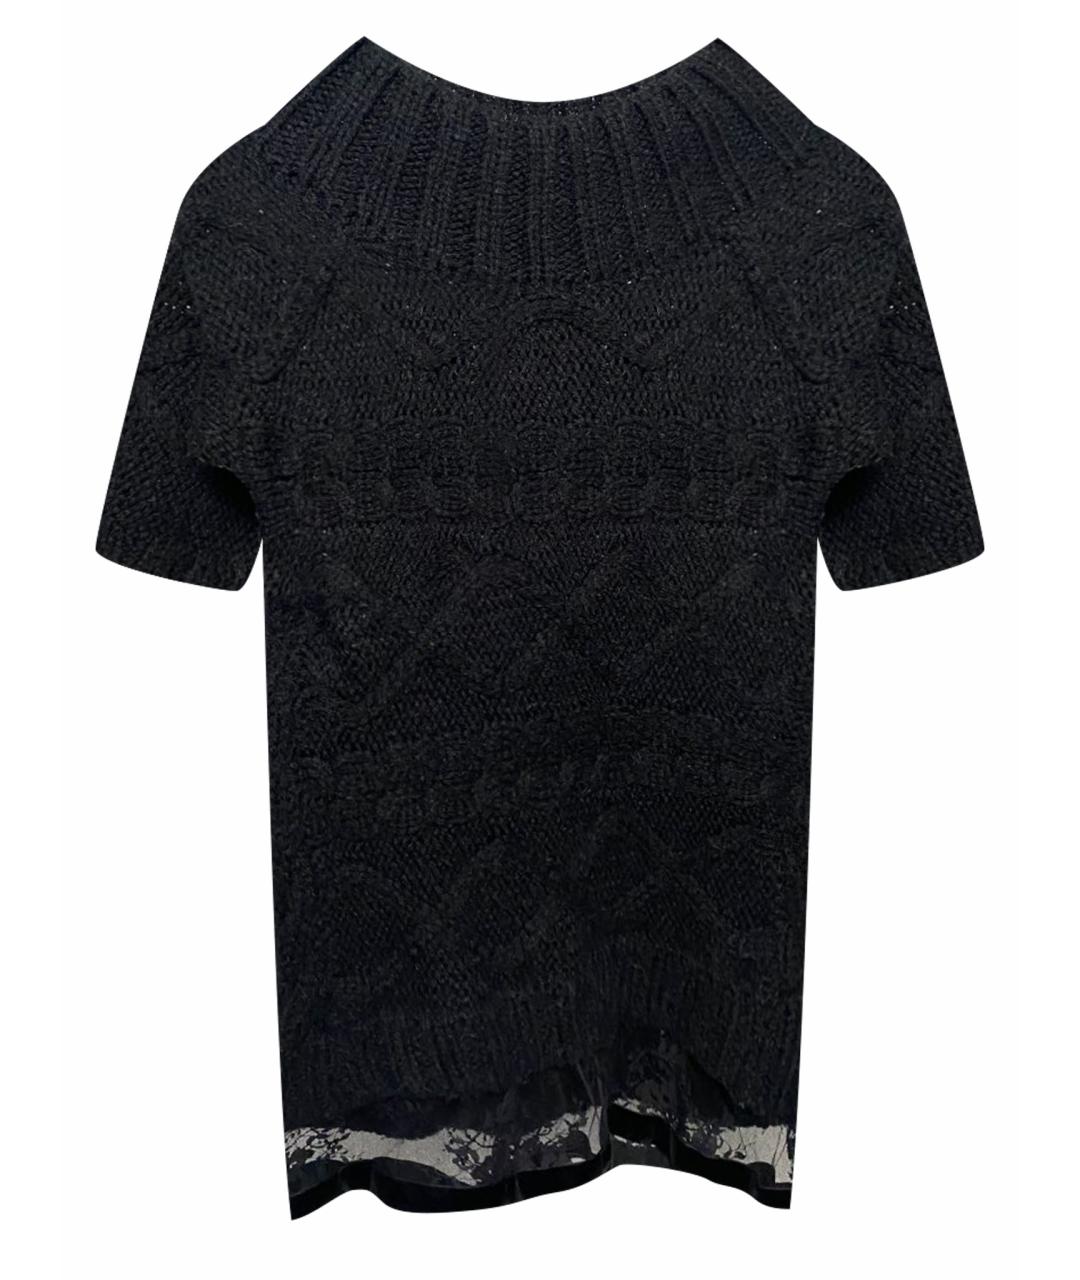 TWIN-SET Черный шерстяной джемпер / свитер, фото 1